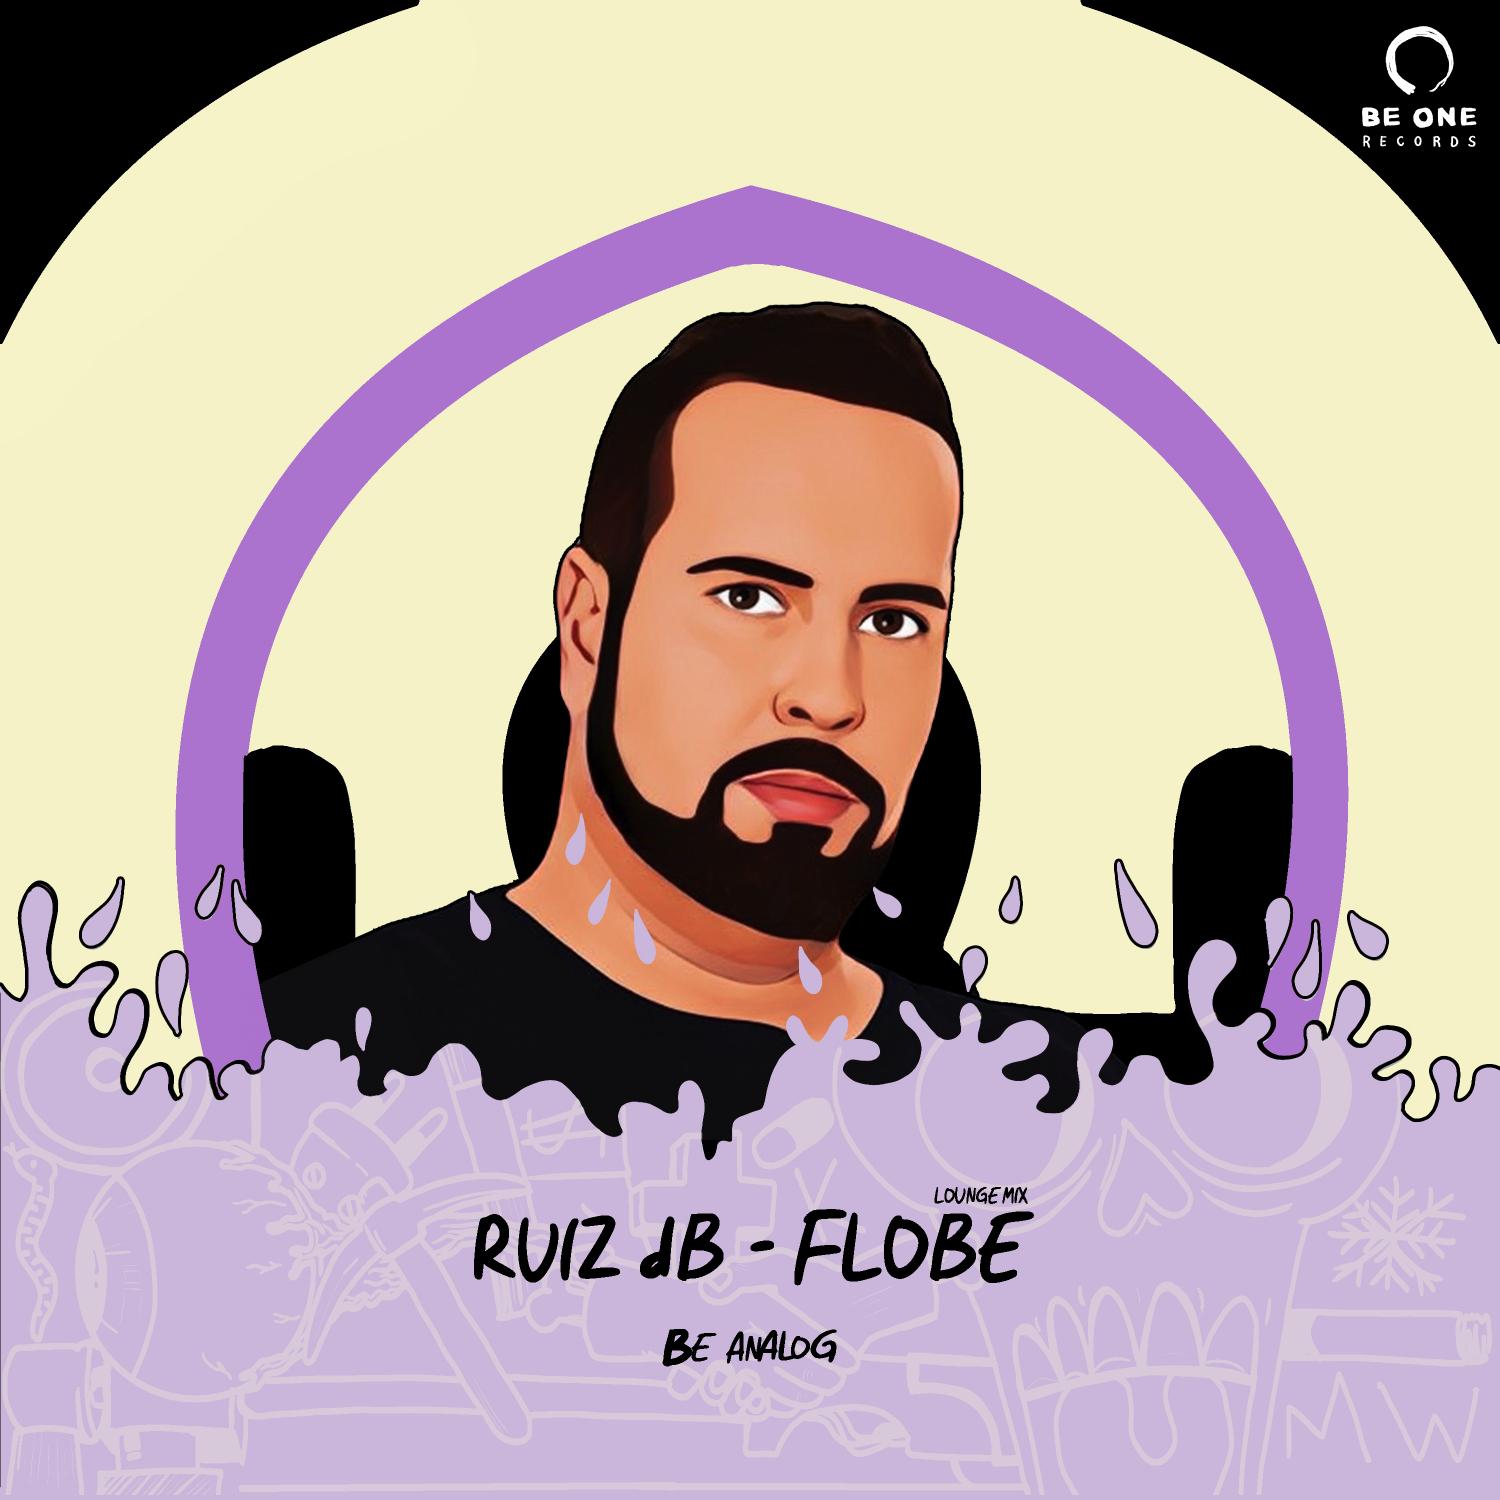 Ruiz dB - Flobe Lm